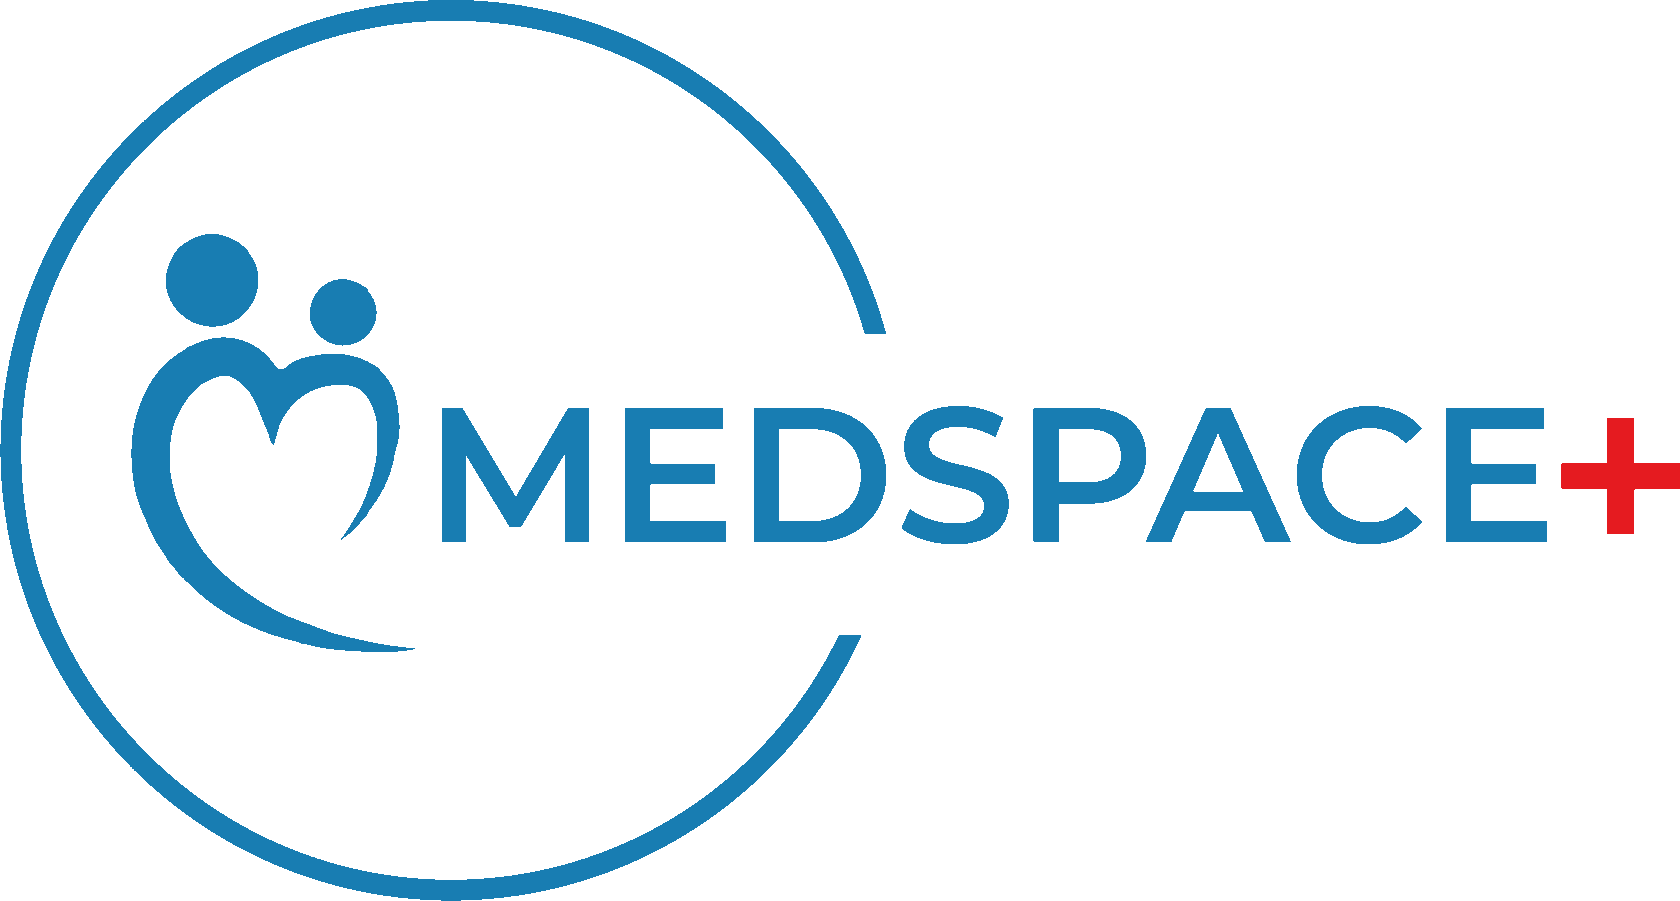 Medspace+